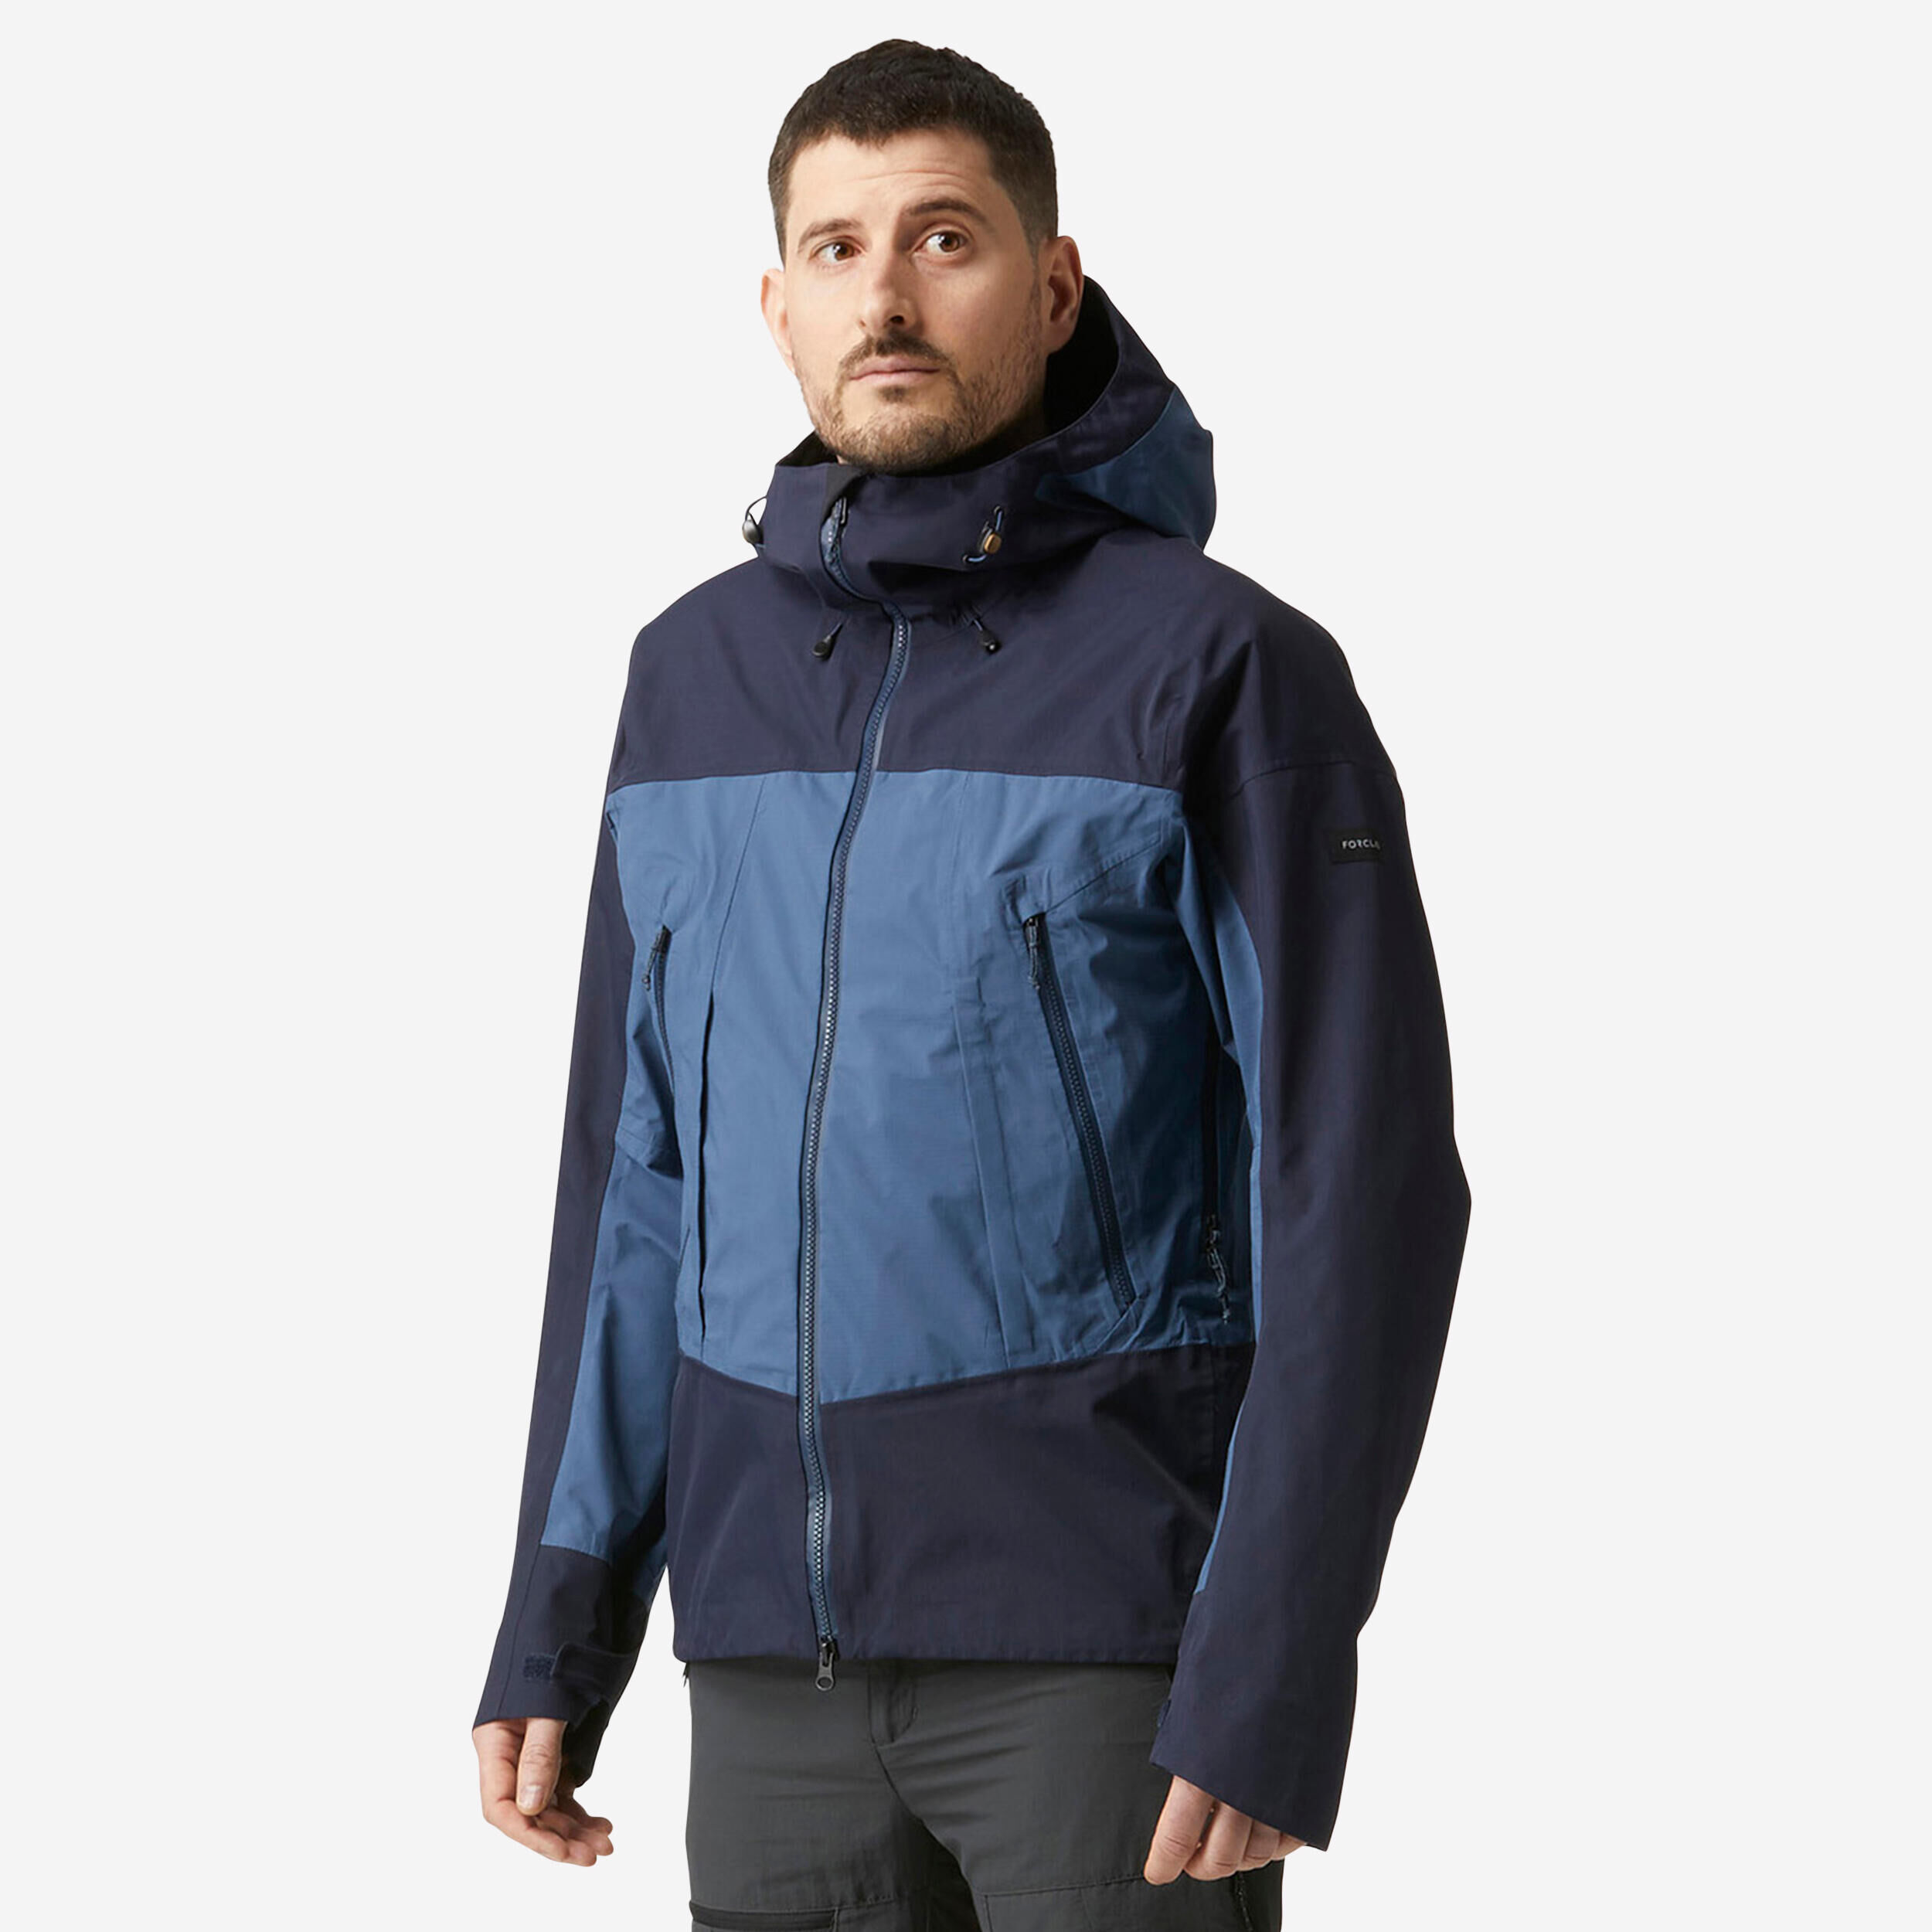 FORCLAZ Men’s Waterproof Jacket – 20,000 mm – taped seams - MT500 